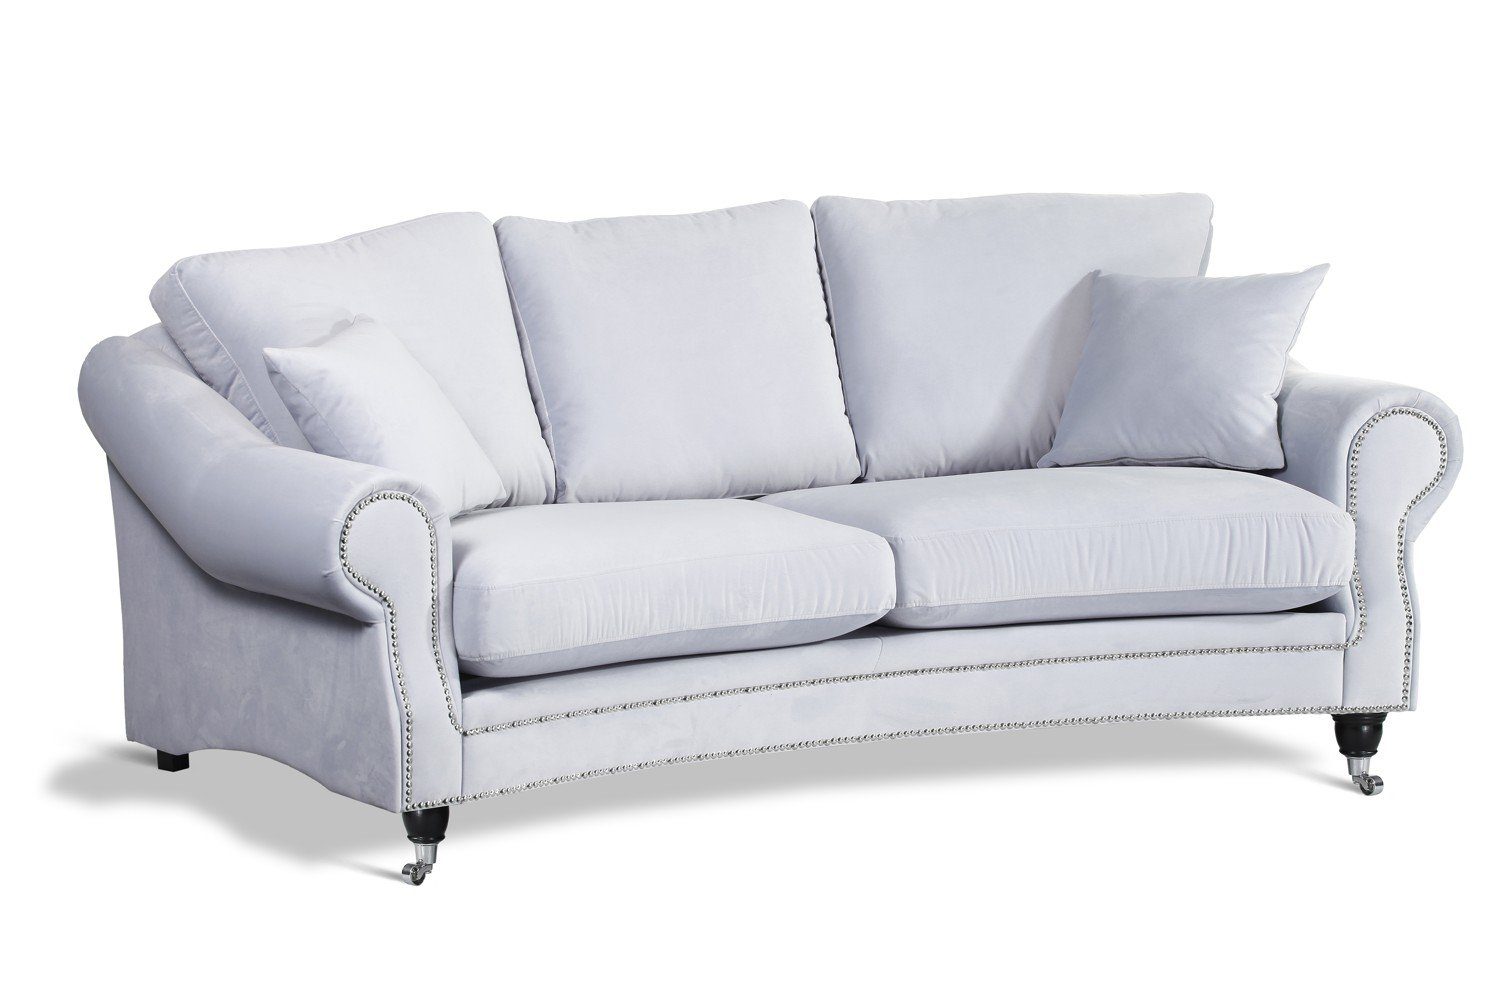 JVmoebel Sofa Textil in Wohnzimmermöbel Europe weißes Made Sofa Dreisitzer Neu, luxus